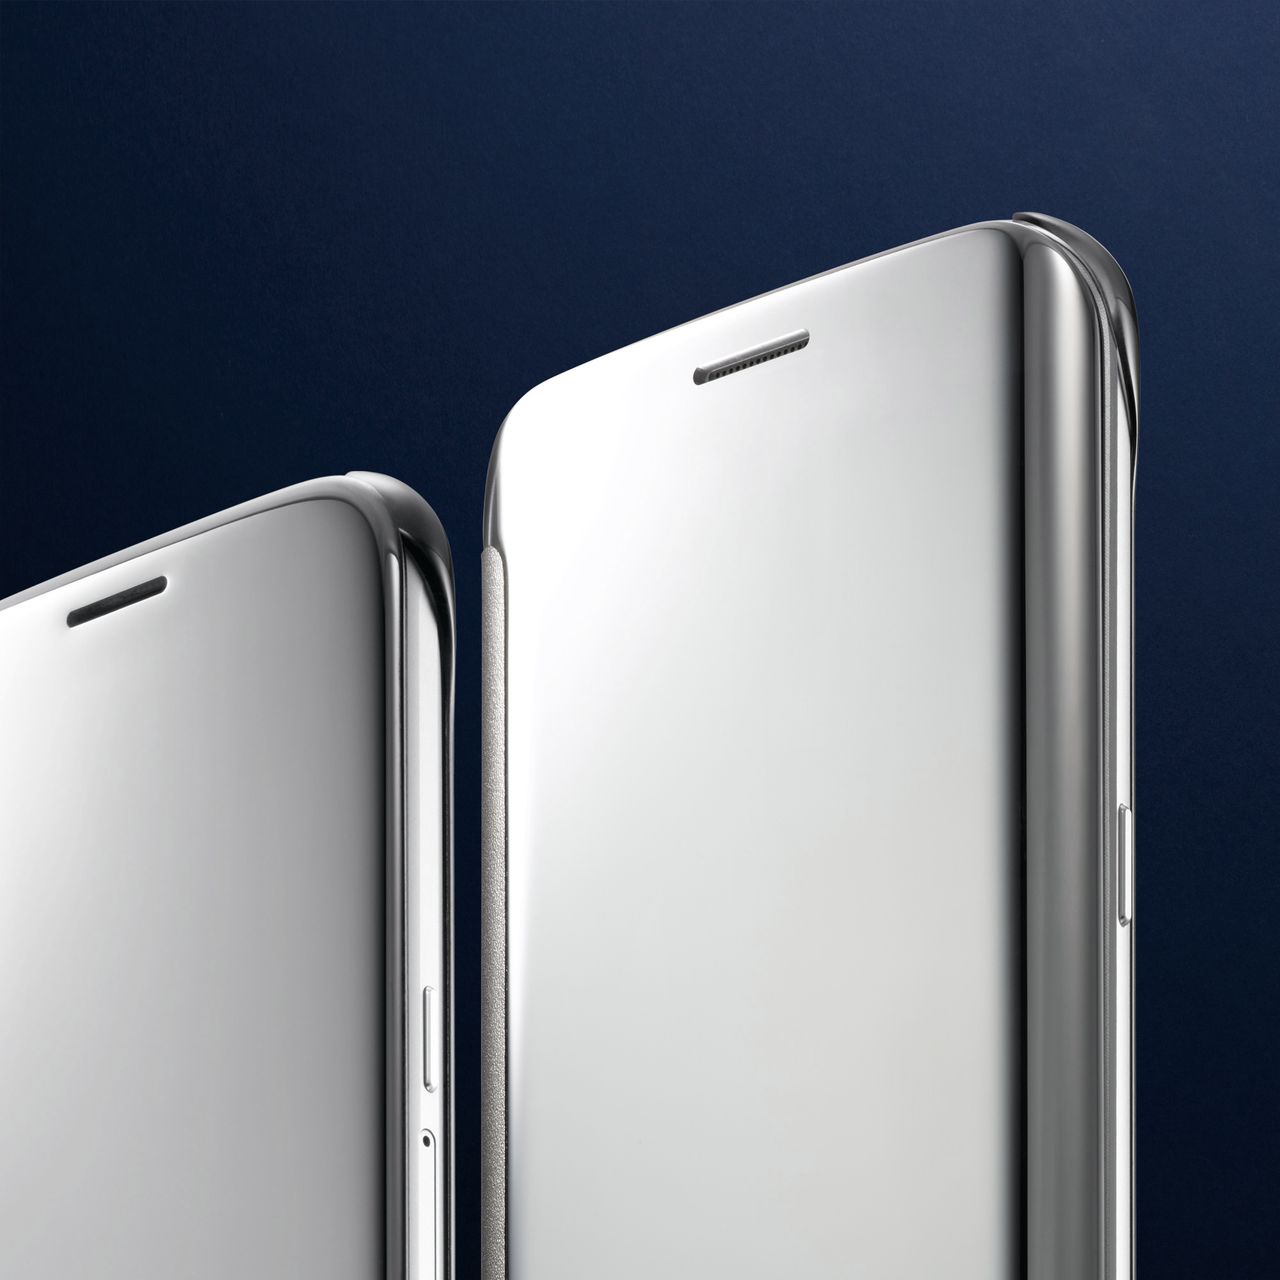 Galaxy Note 5 i Galaxy S6 edge+ na kolejnych zdjęciach. Jest i pudełko ze specyfikacją